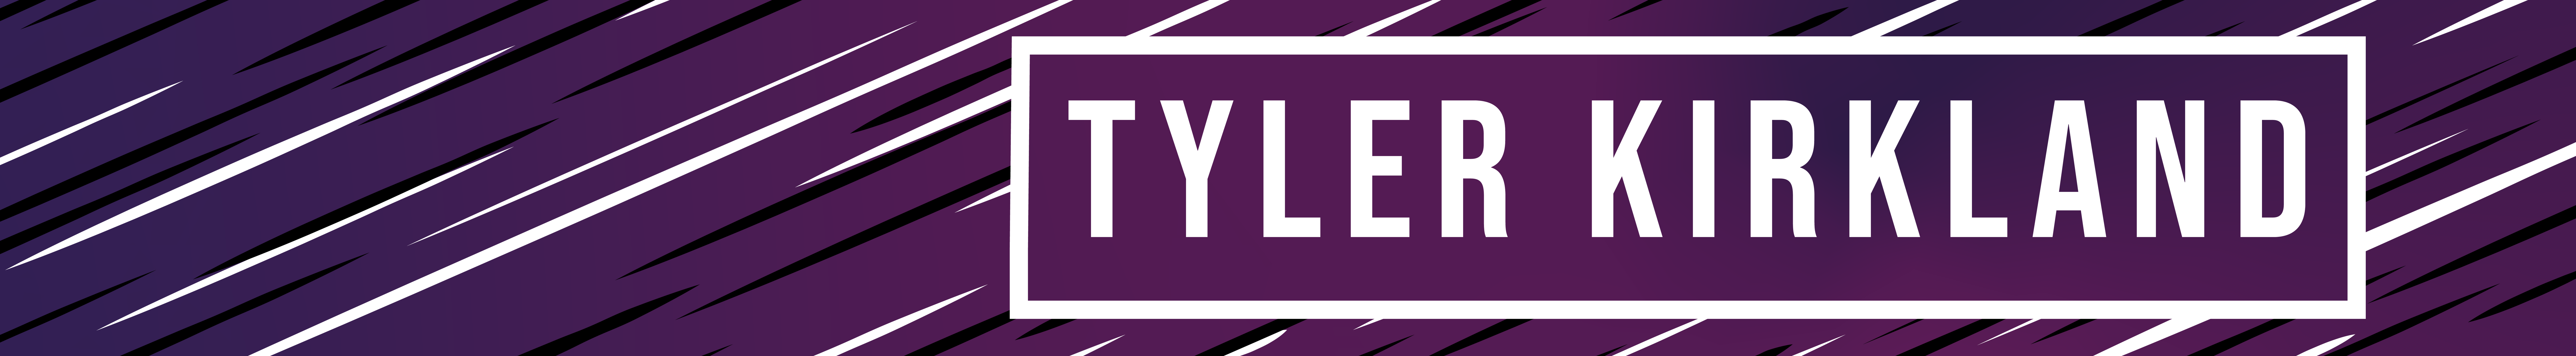 Tyler Kirkland's profile banner